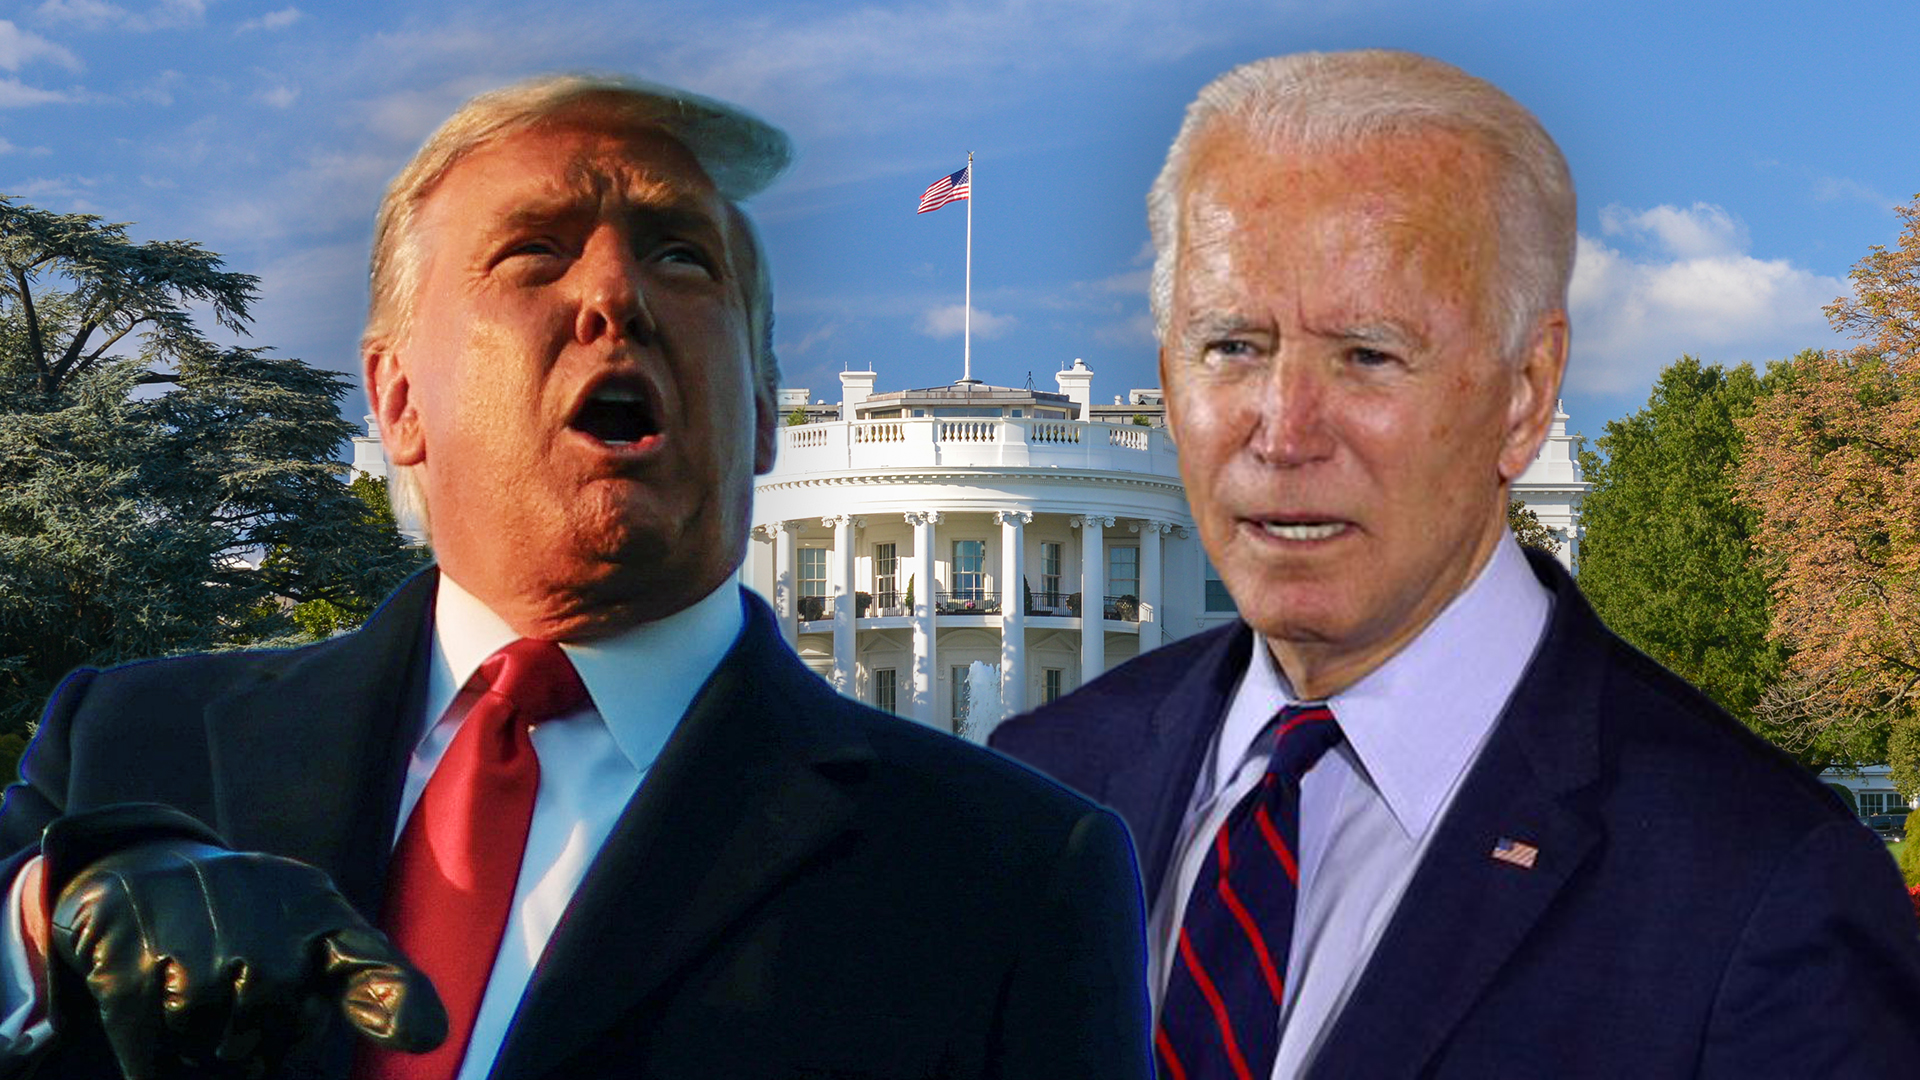 Donald Trump y Joe Biden representan propuestas completamente diferentes para conducir los destinos de la mayor potencia mundial: Estados Unidos (Infobae)